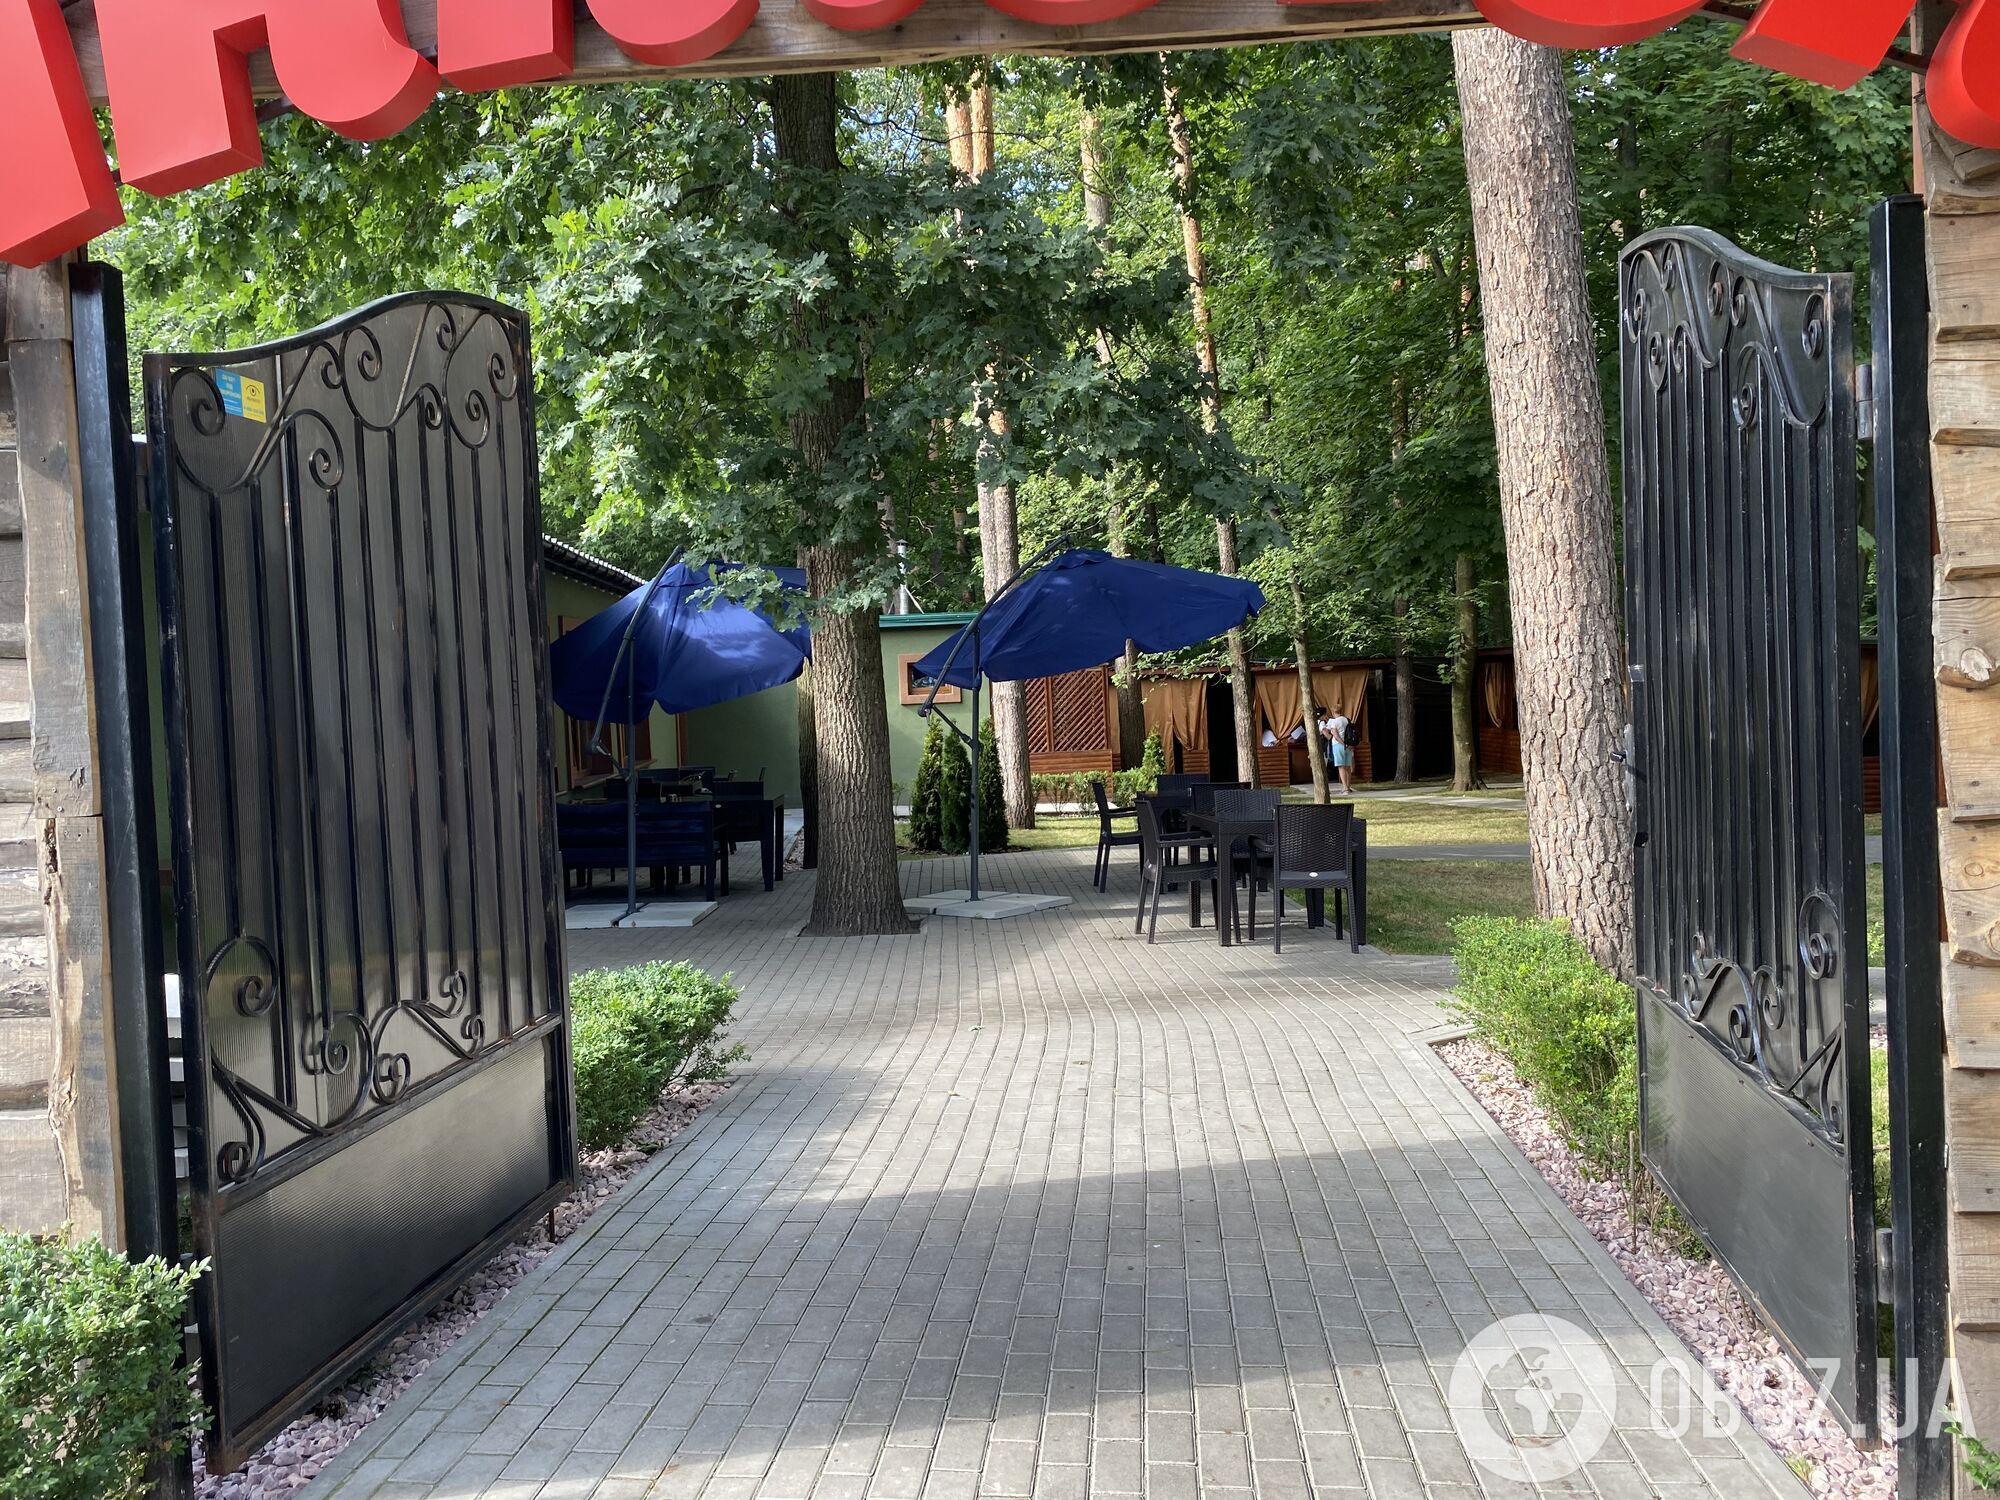 Новый ресторан, больше парковок и стройка в садах: пока идет суд, экс-милиционер продолжает свой бизнес в парке "Голосеевский"